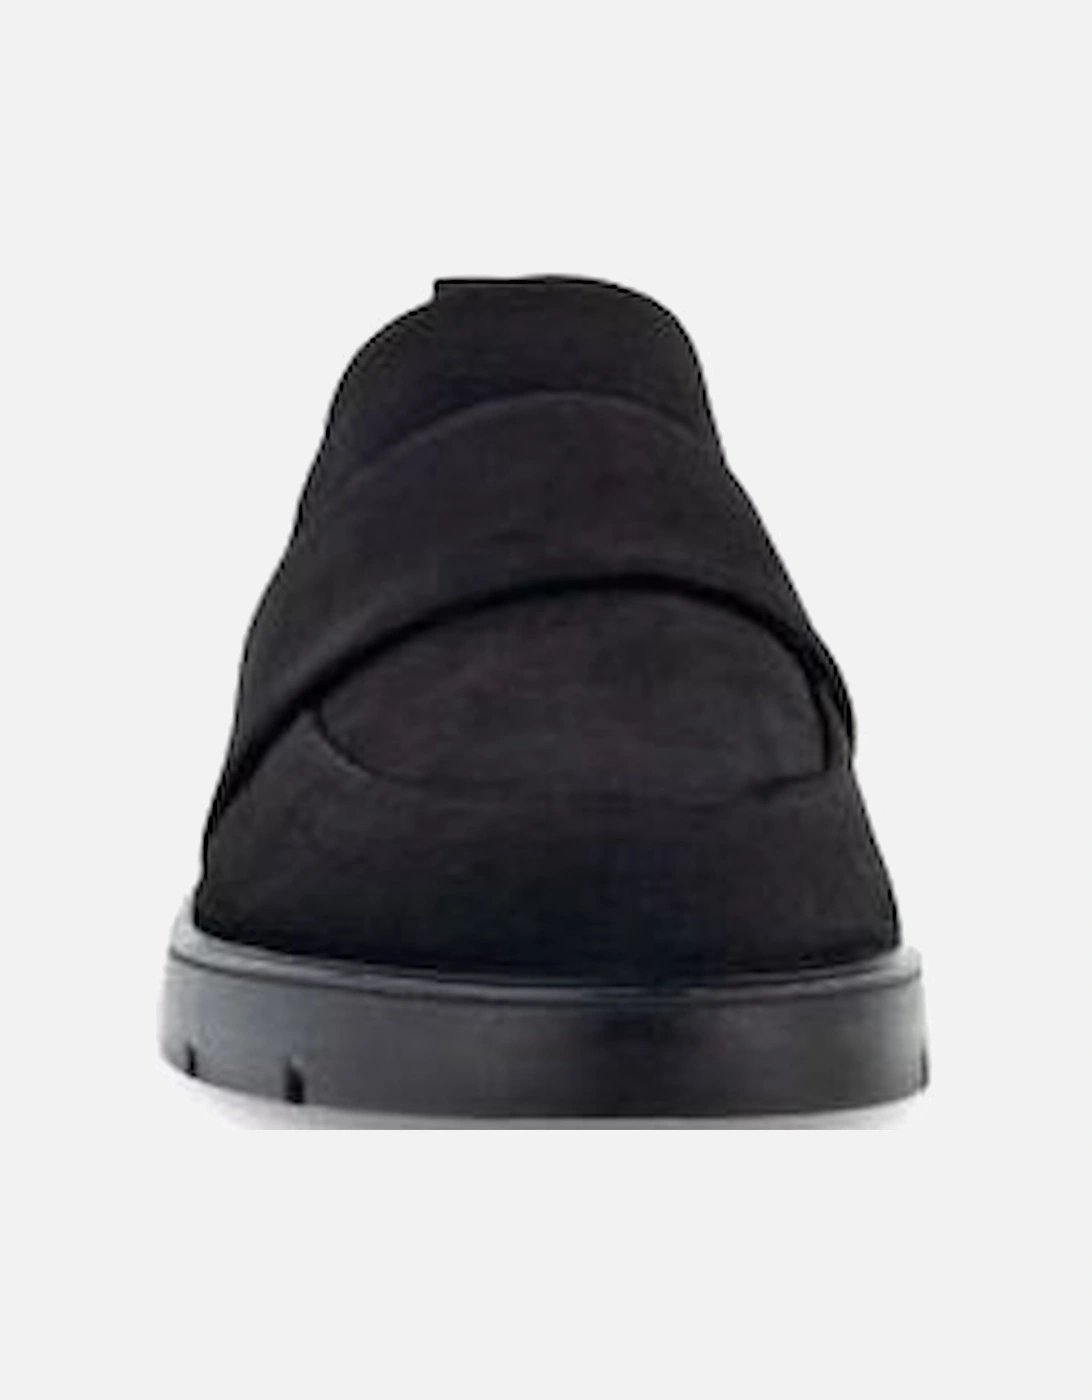 Ladies shoe 282303-02001 in black Nubuck